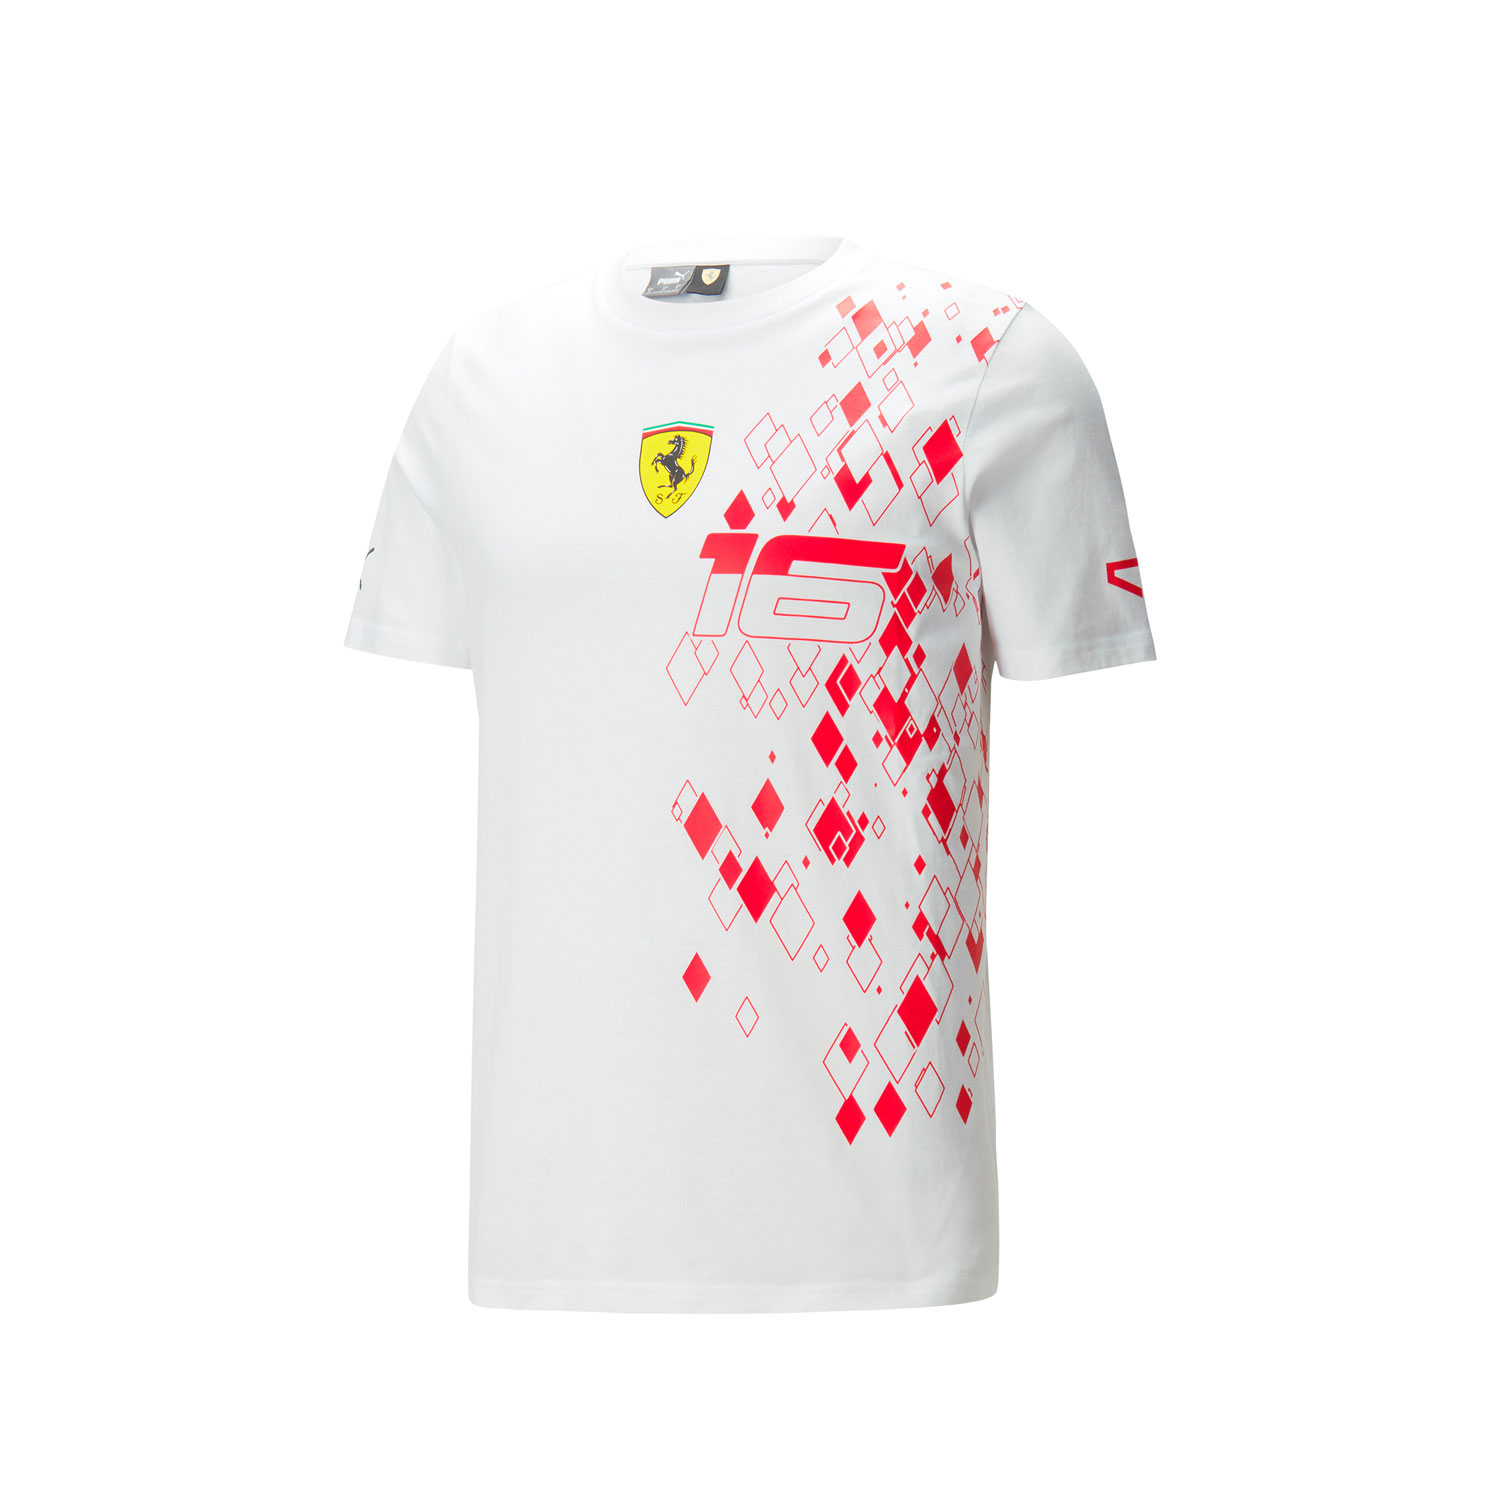 Scuderia Ferrari F1 Special Edition Charles Leclerc Monaco GP T-Shirt - White